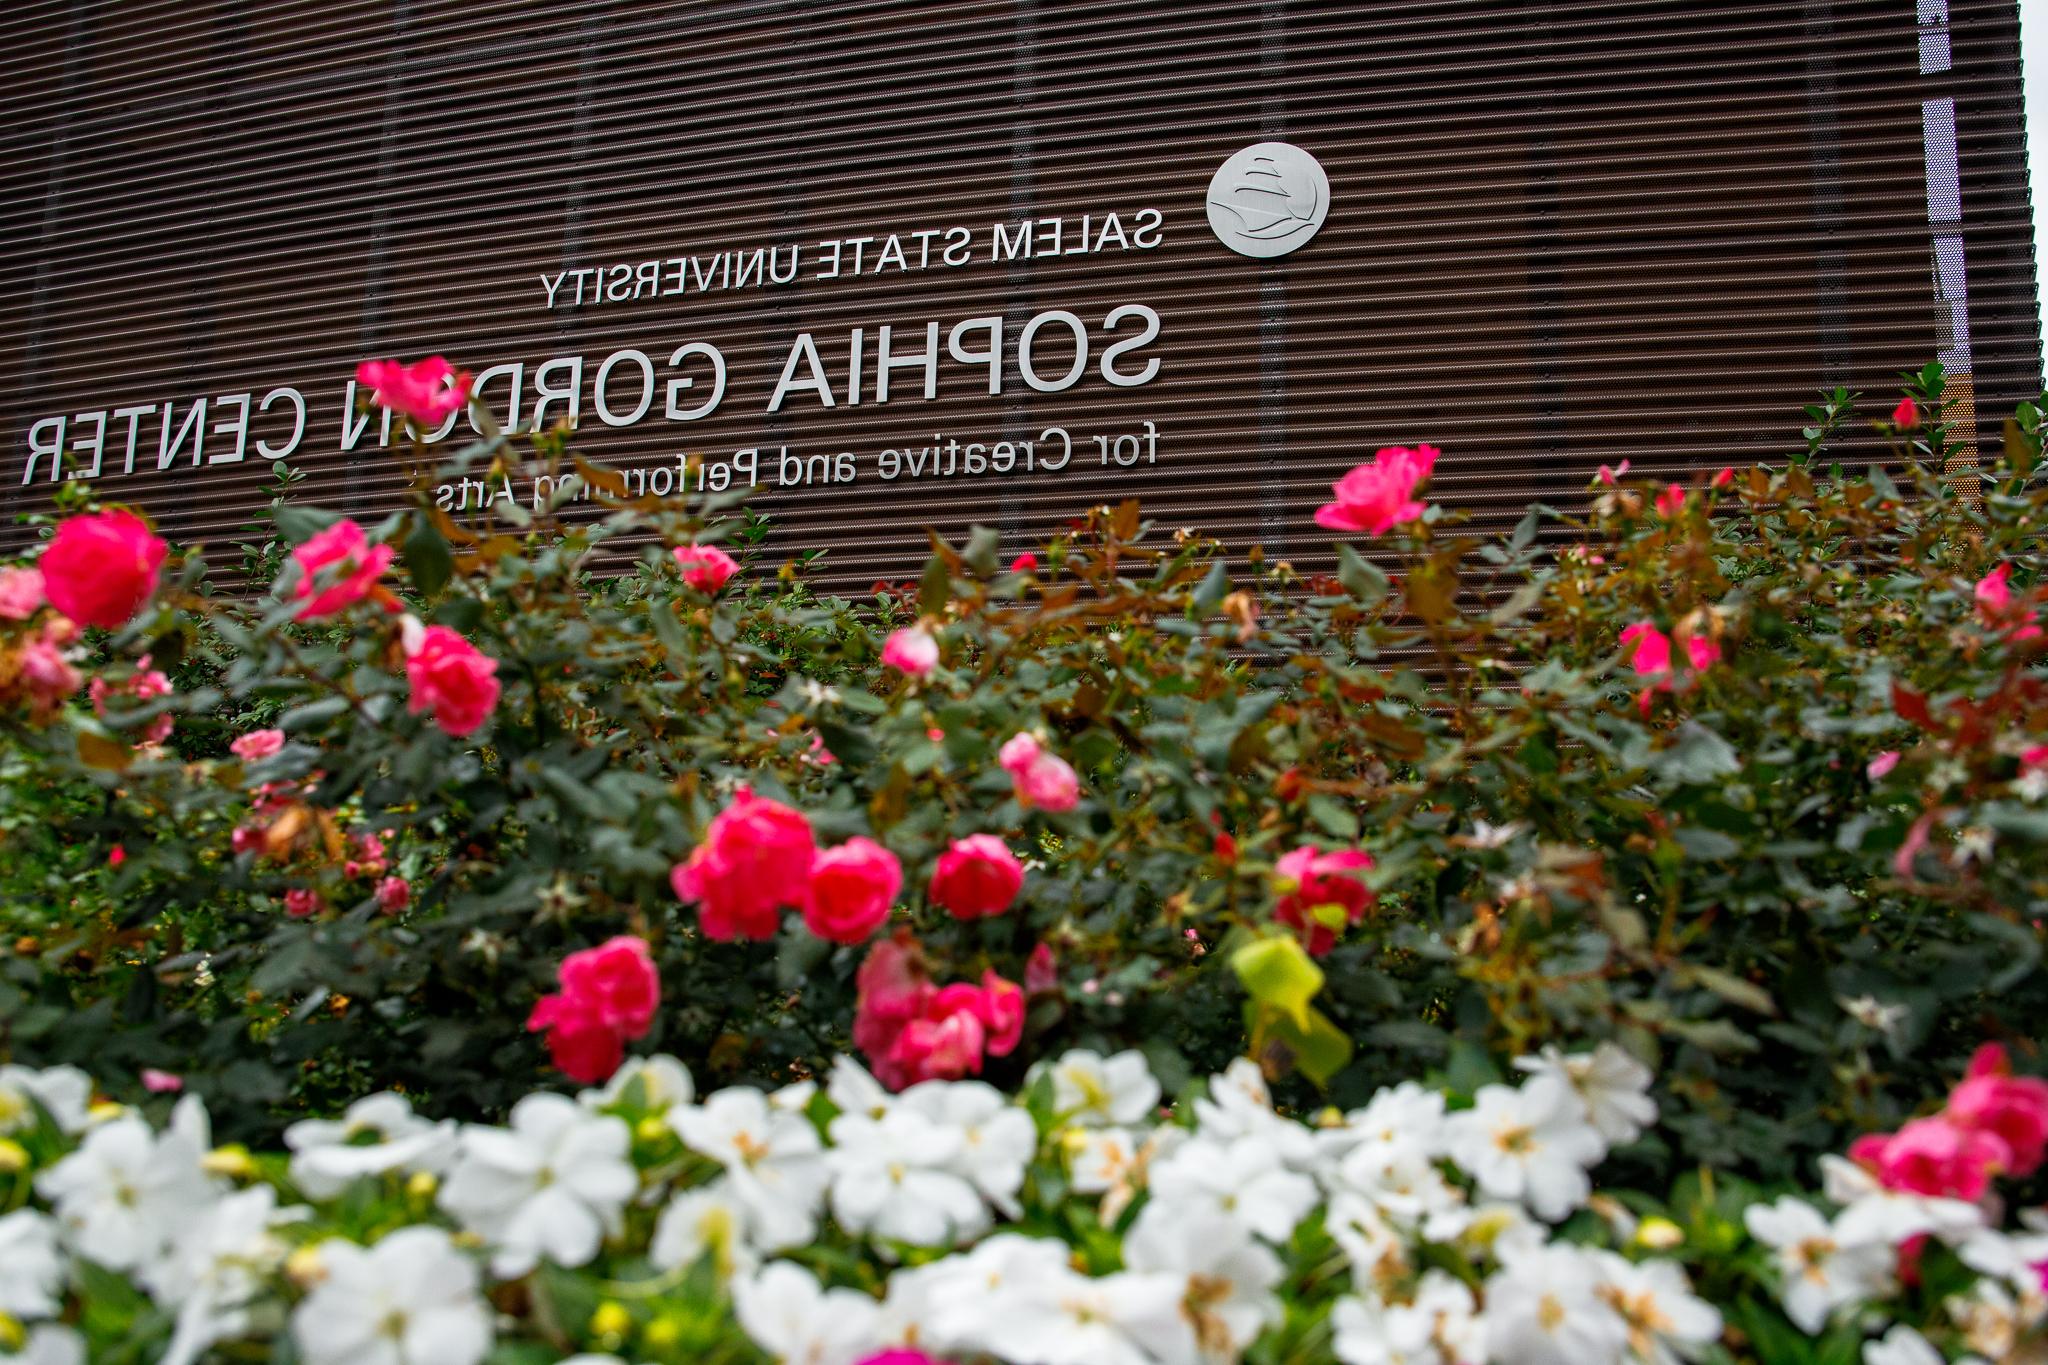 索菲亚·戈登中心用鲜花装饰建筑标志.